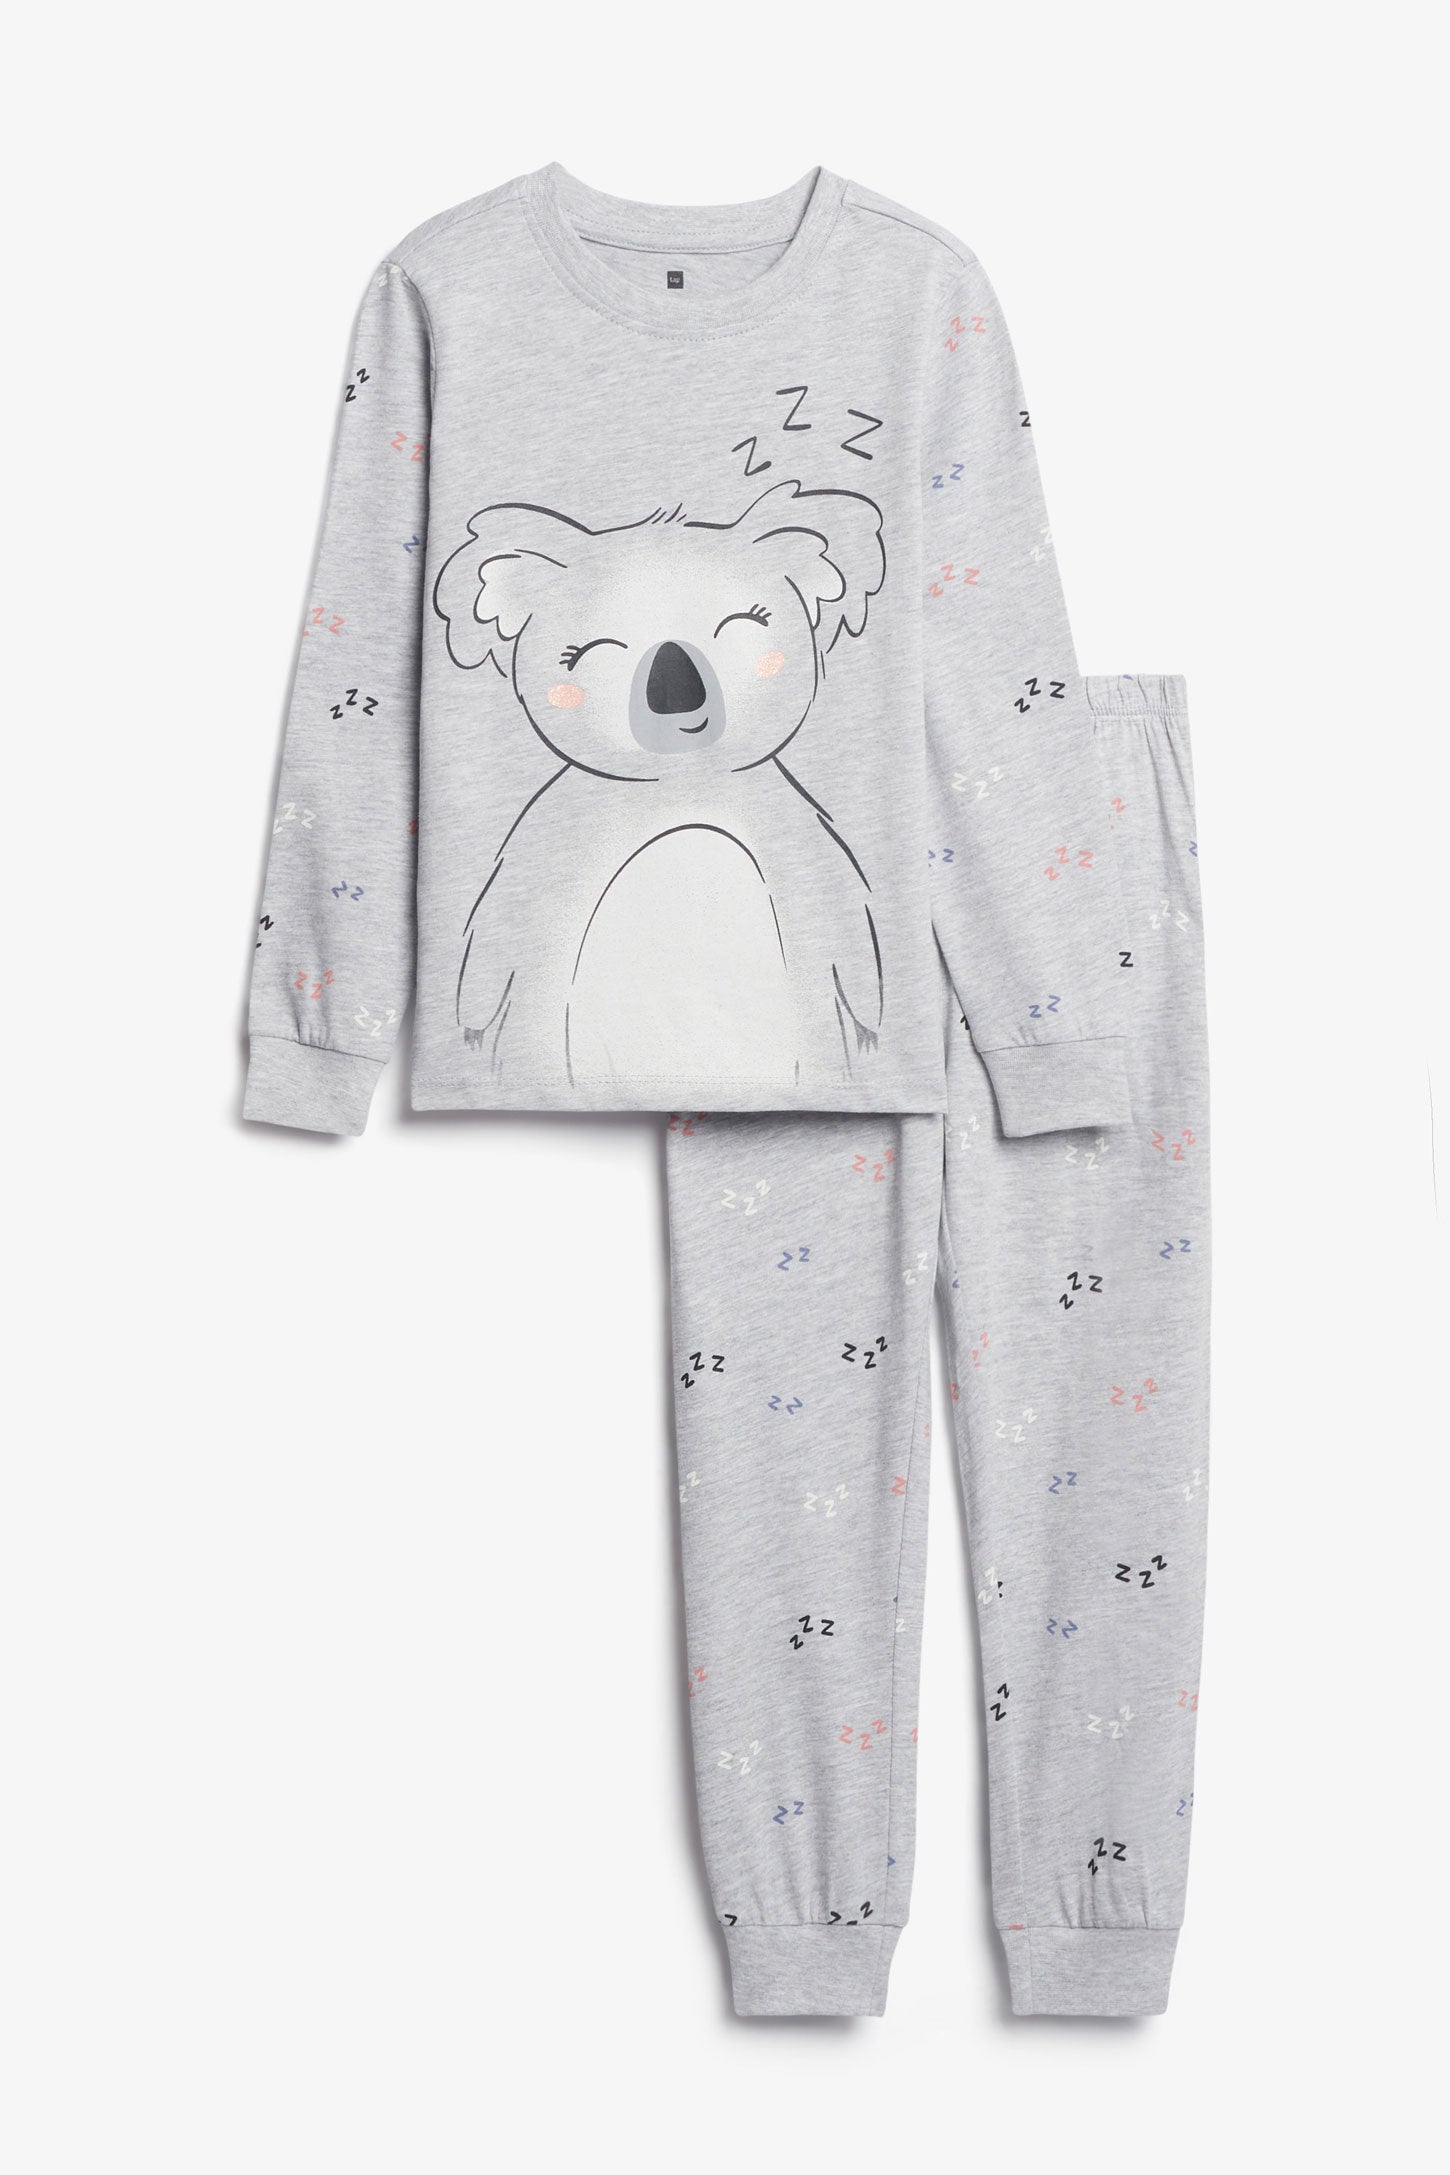 Duos futés, Pyjama 2-pièces en coton, 2/35$ - Enfant fille && GRIS MIXTE